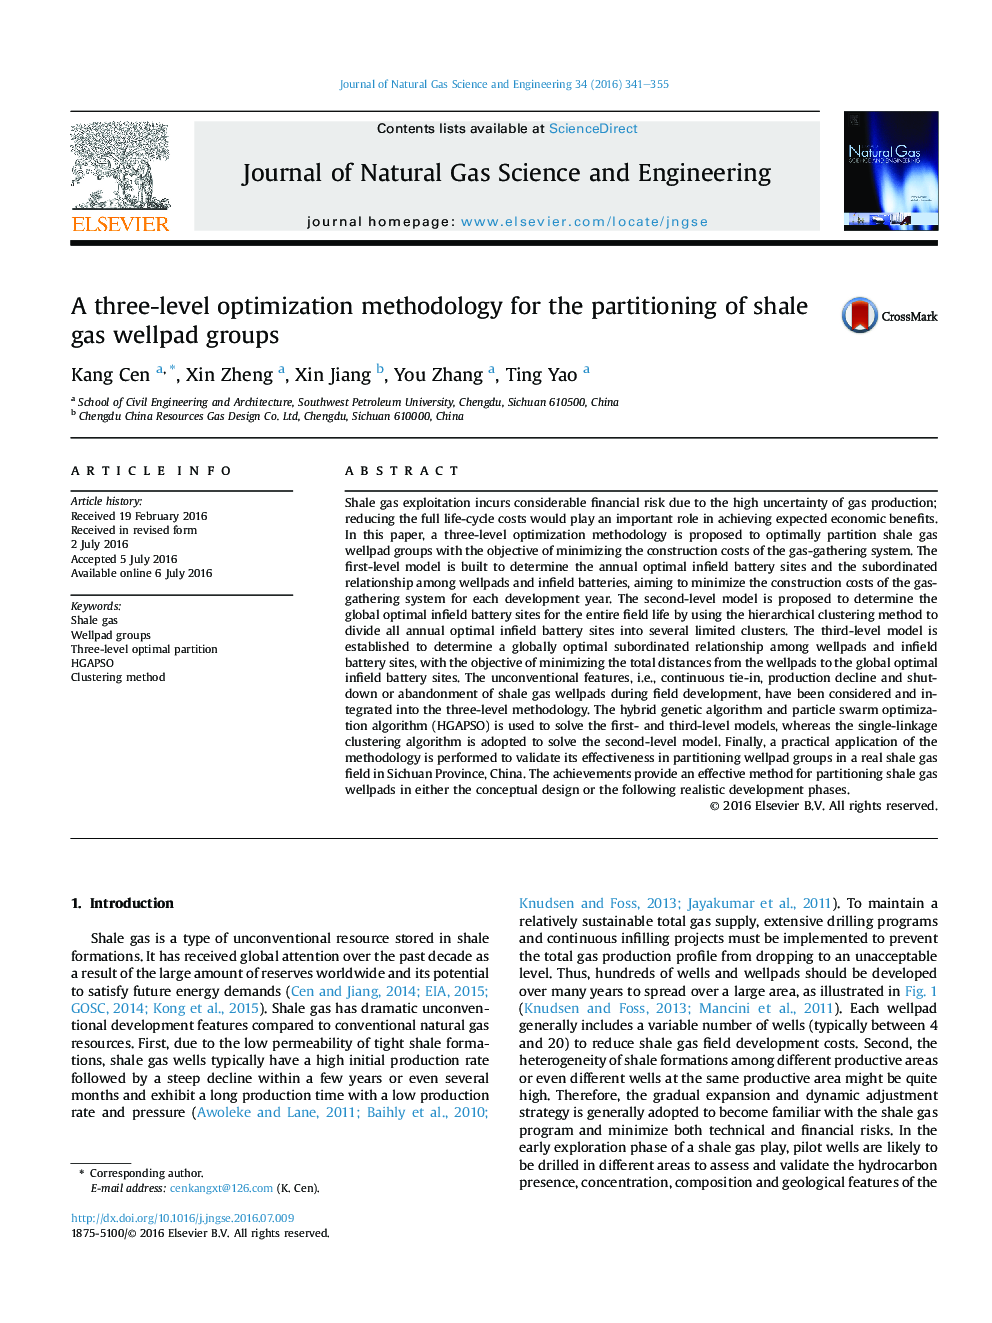 یک روش سه گانه بهینه سازی برای جداسازی گروه های گازسوزی شیل 